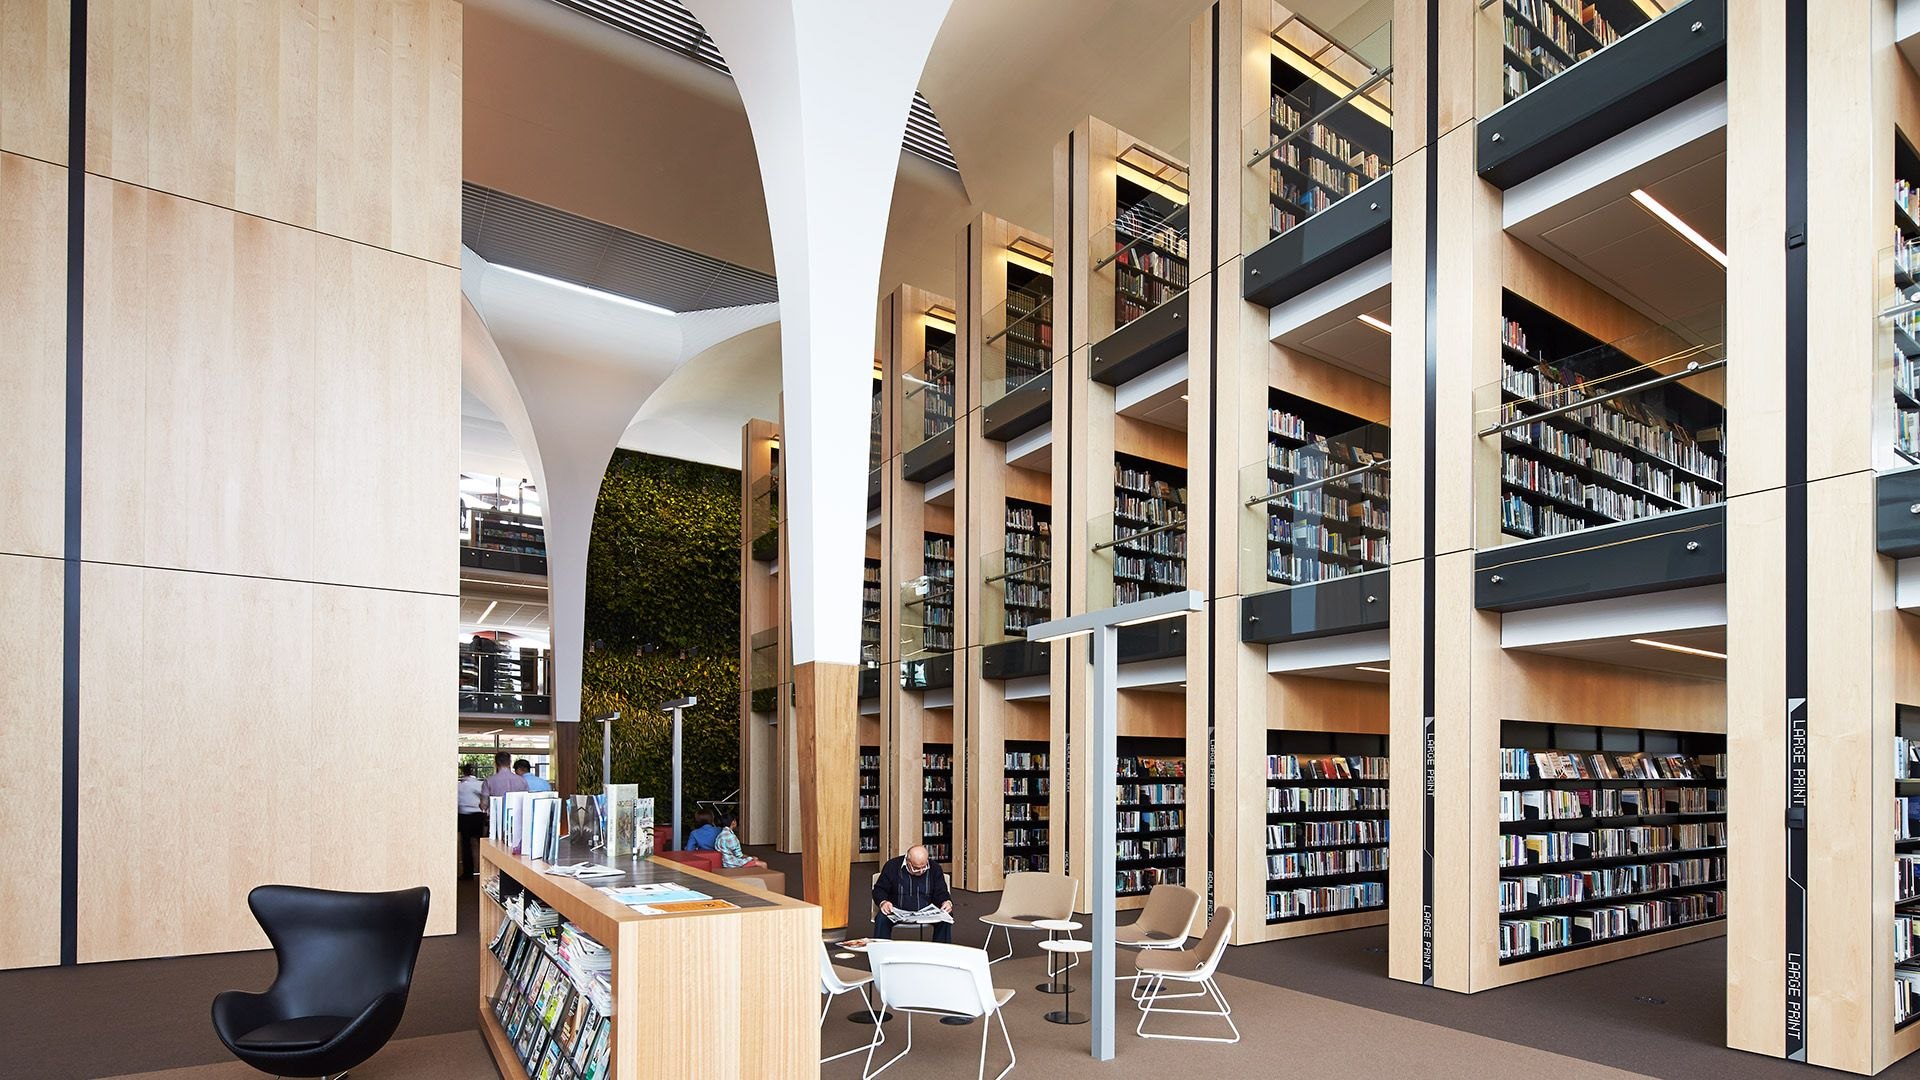 Дизайн библиотеки общественной. Центральная библиотека Лос-Анджелеса внутри. Библиотека Японии читальный зал. Интерьер современной библиотеки. Интерьер библиотеки публичной.